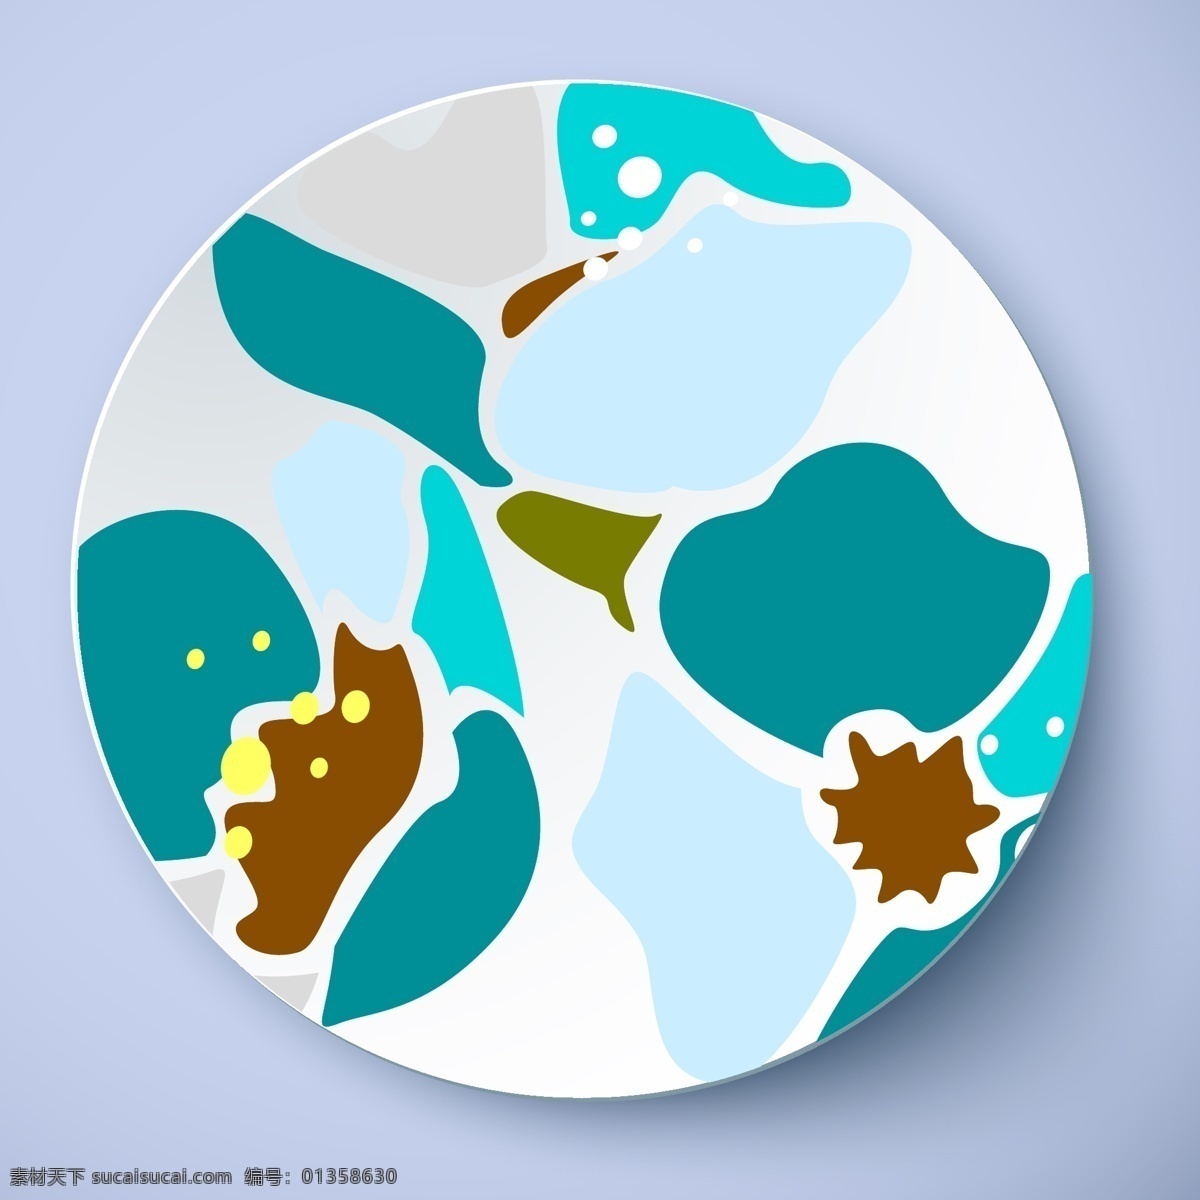 盘子 花纹 抽象 图案 瓷盘 蓝色调 矢量图 抽象图案设计 盘子花纹 其他矢量图